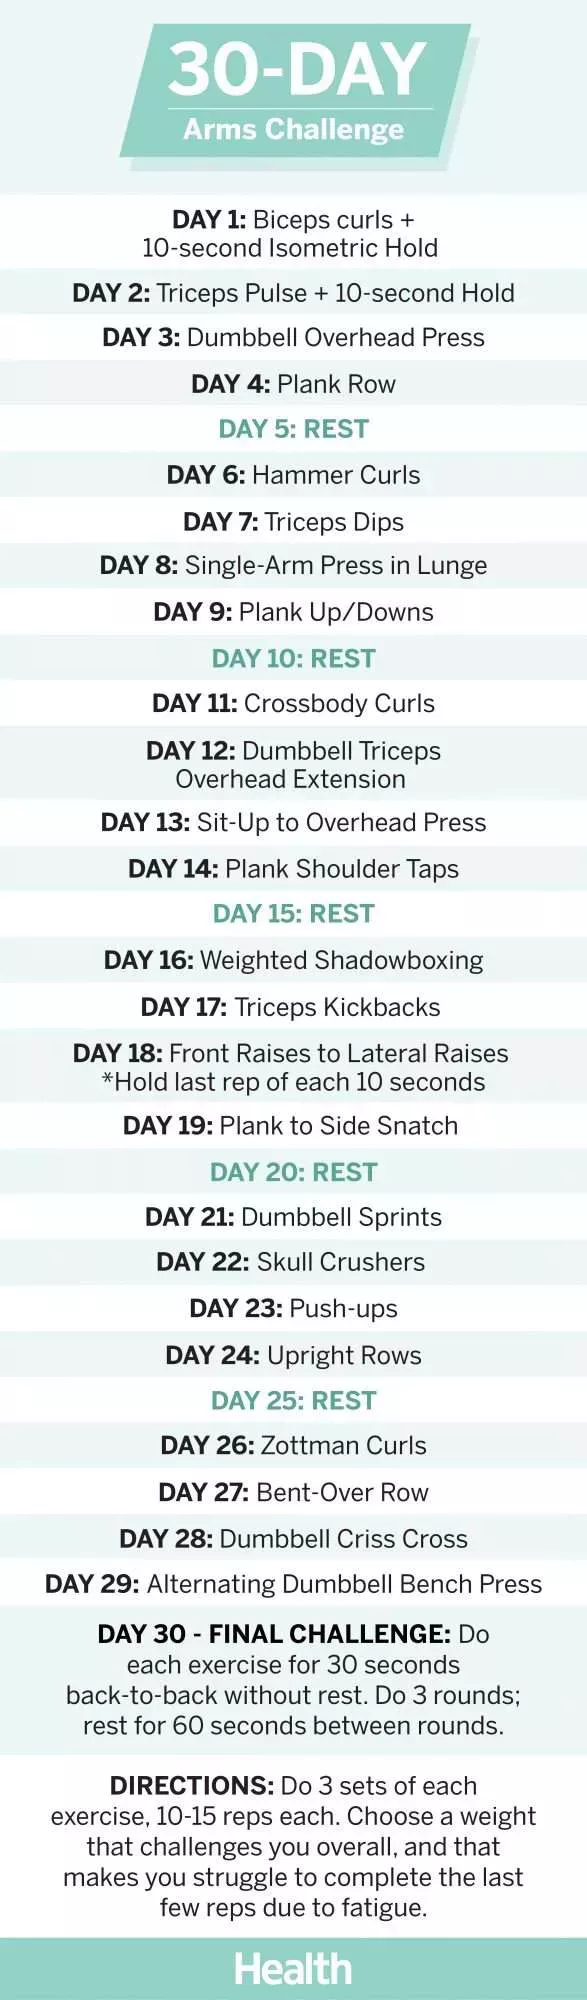 Este reto de 30 días transformará tus brazos en sólo 4 semanas